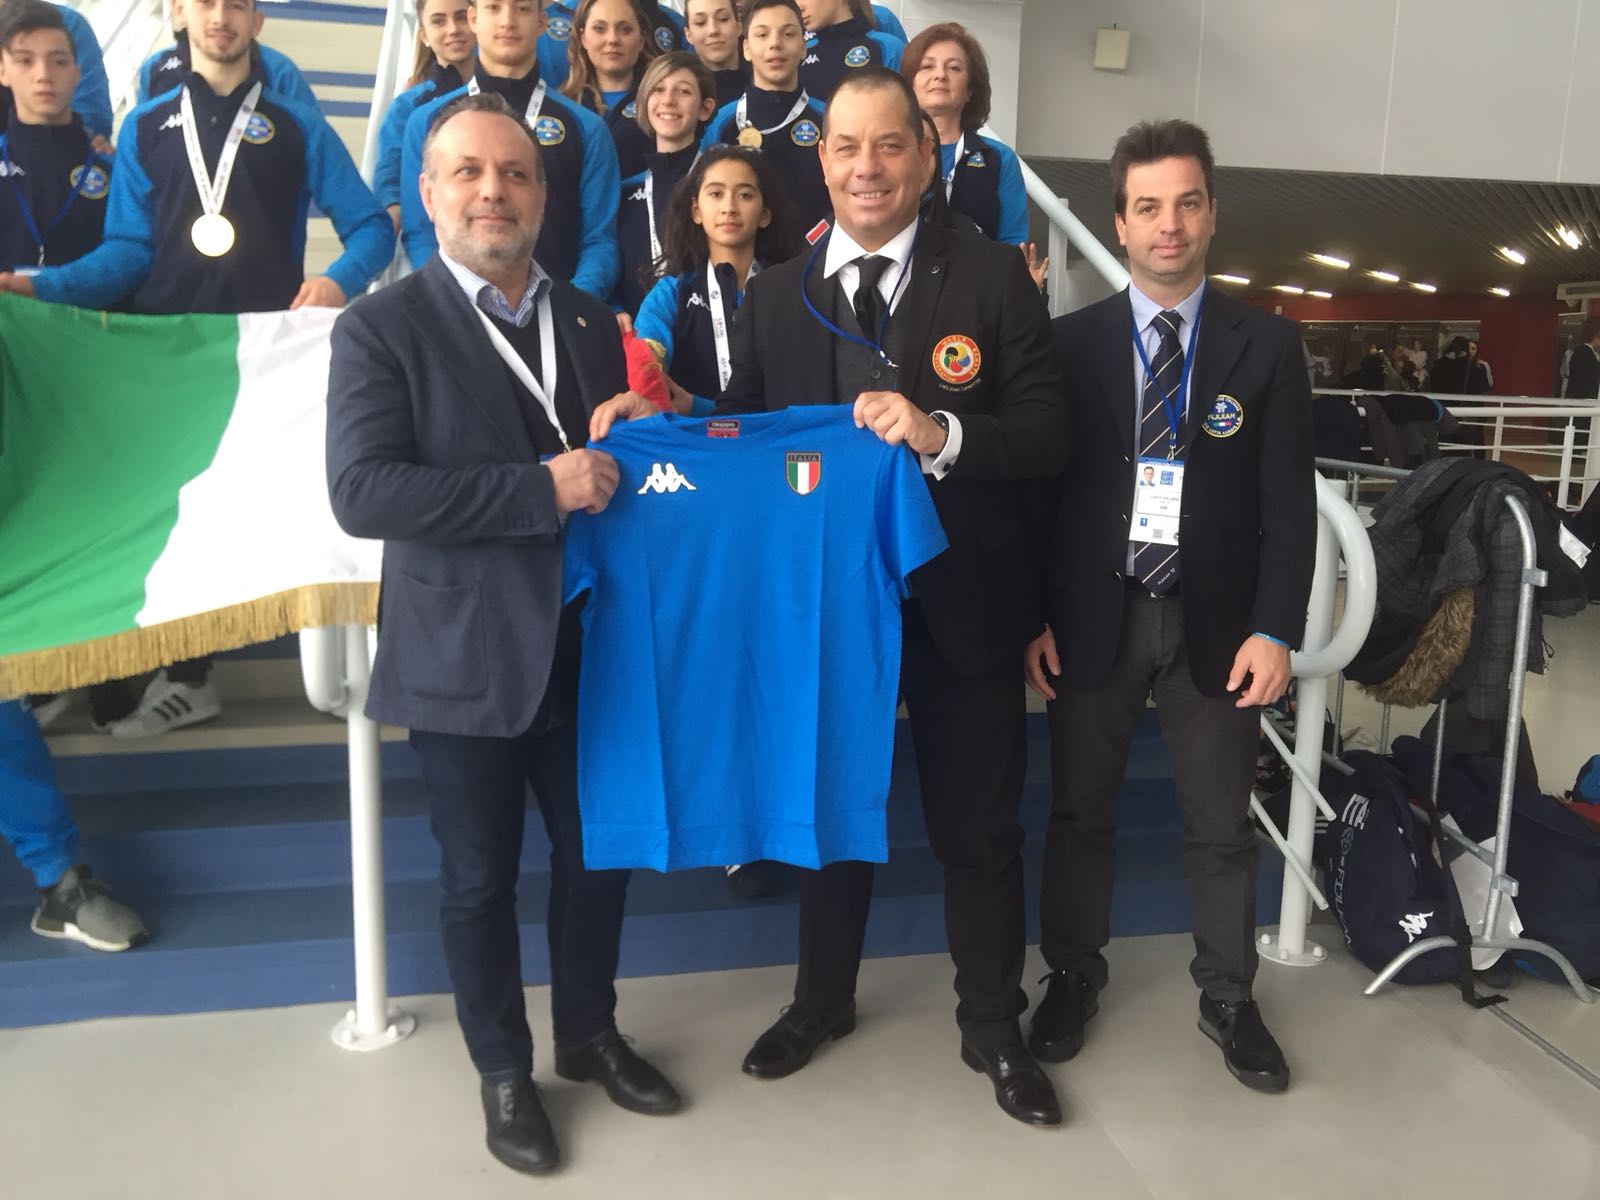 A Sochi l'Italia domina agli Europei U21, Cadetti e Juniores di Karate. Azzurri primi nel medagliere!